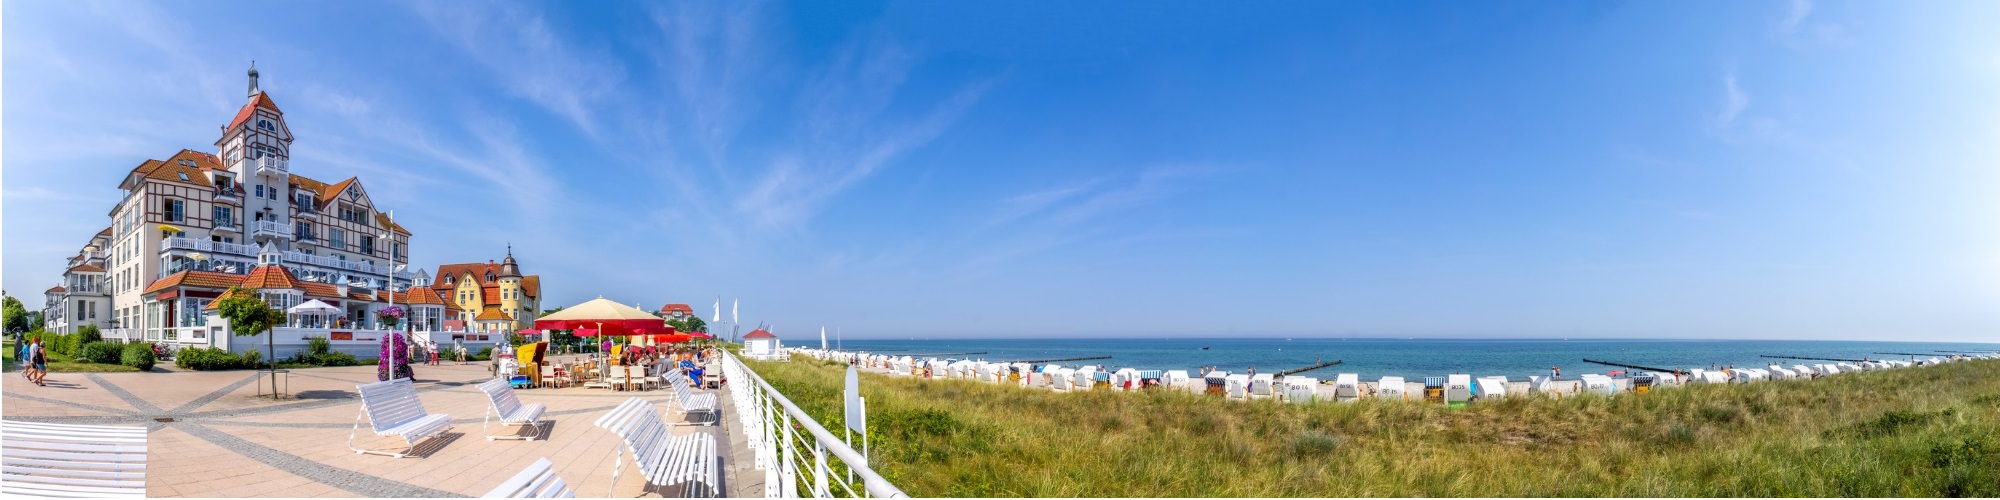 Panoramabild auf eine Strandpromenade vor dem mit Strandkörben belegten Strand der Ostsee